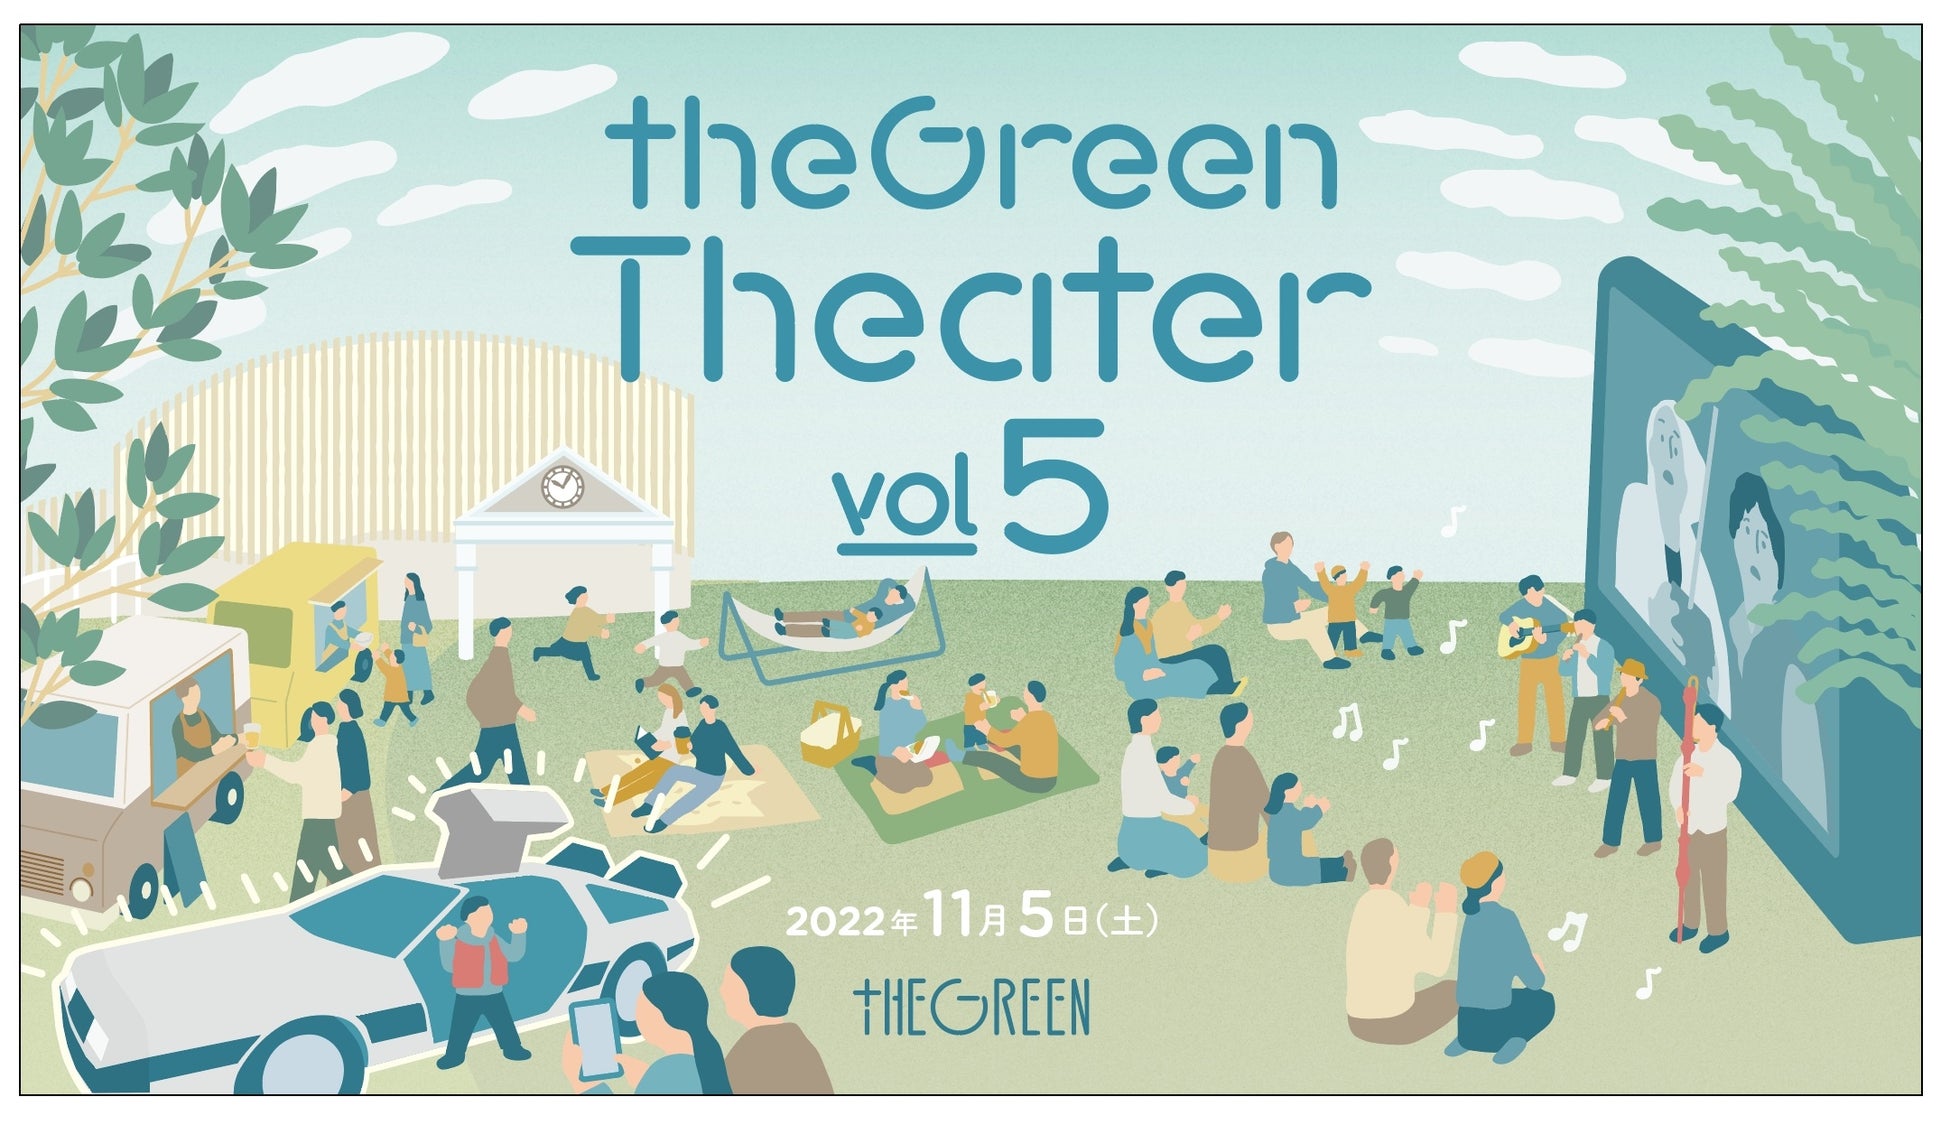 芝生でゆったり映画を満喫する夜を。野外の映画上映イベント「theGreen Theater vol.5」が11月5日(土)に開催